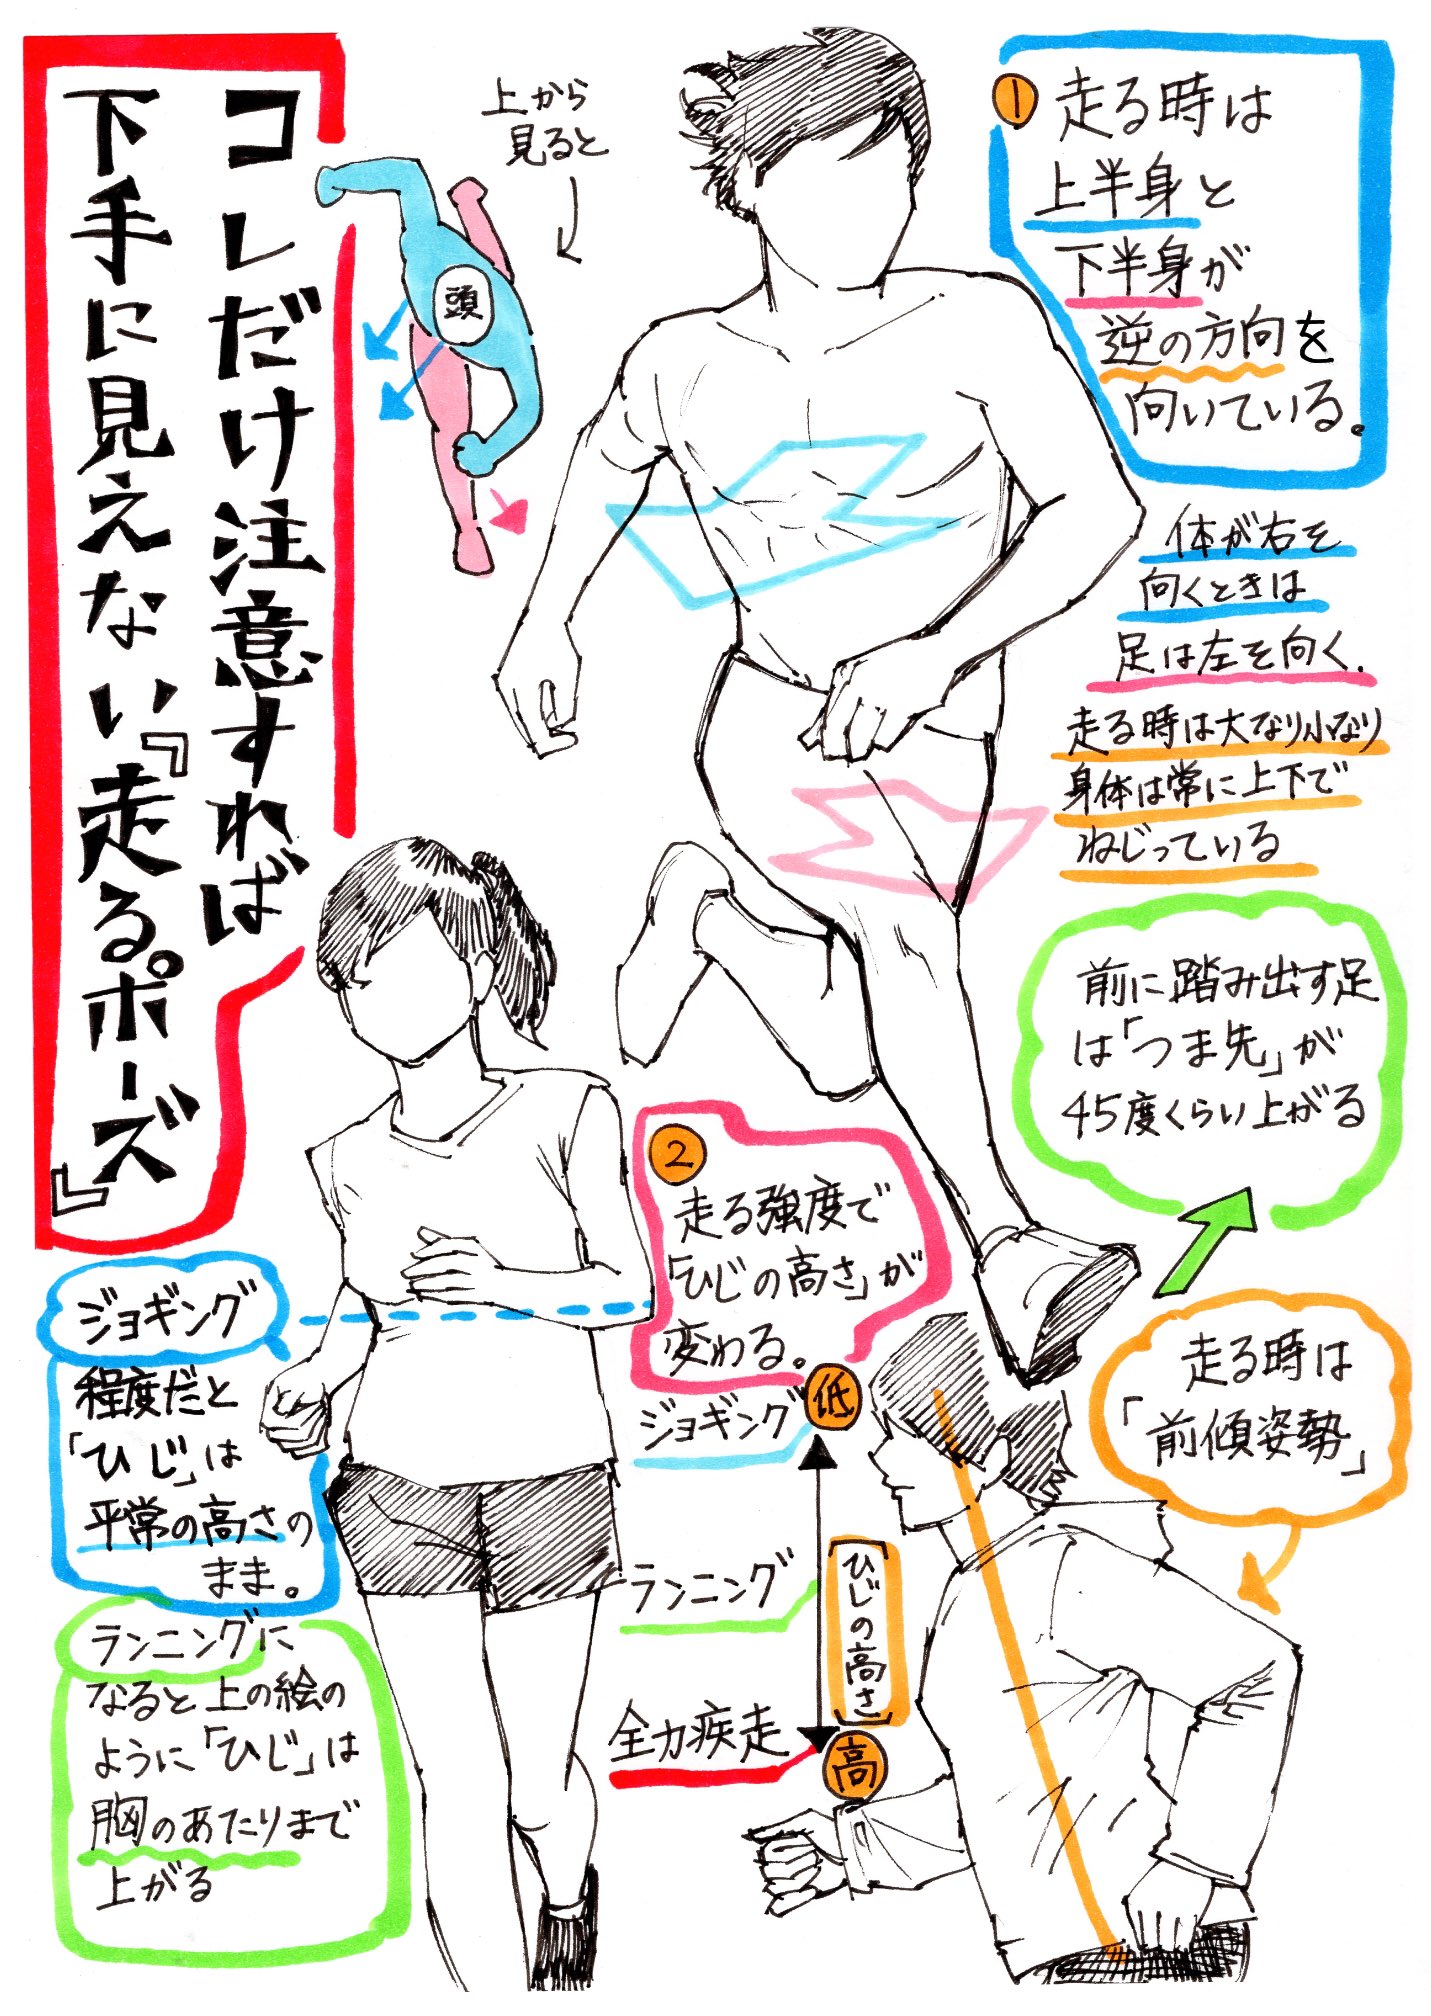 Twitter 上的 吉村拓也 イラスト講座 走るポーズの描き方 腕や胴体の回転アングルが上達する 体の動きを出すデッサン方法 T Co Elgwsdfmxx Twitter